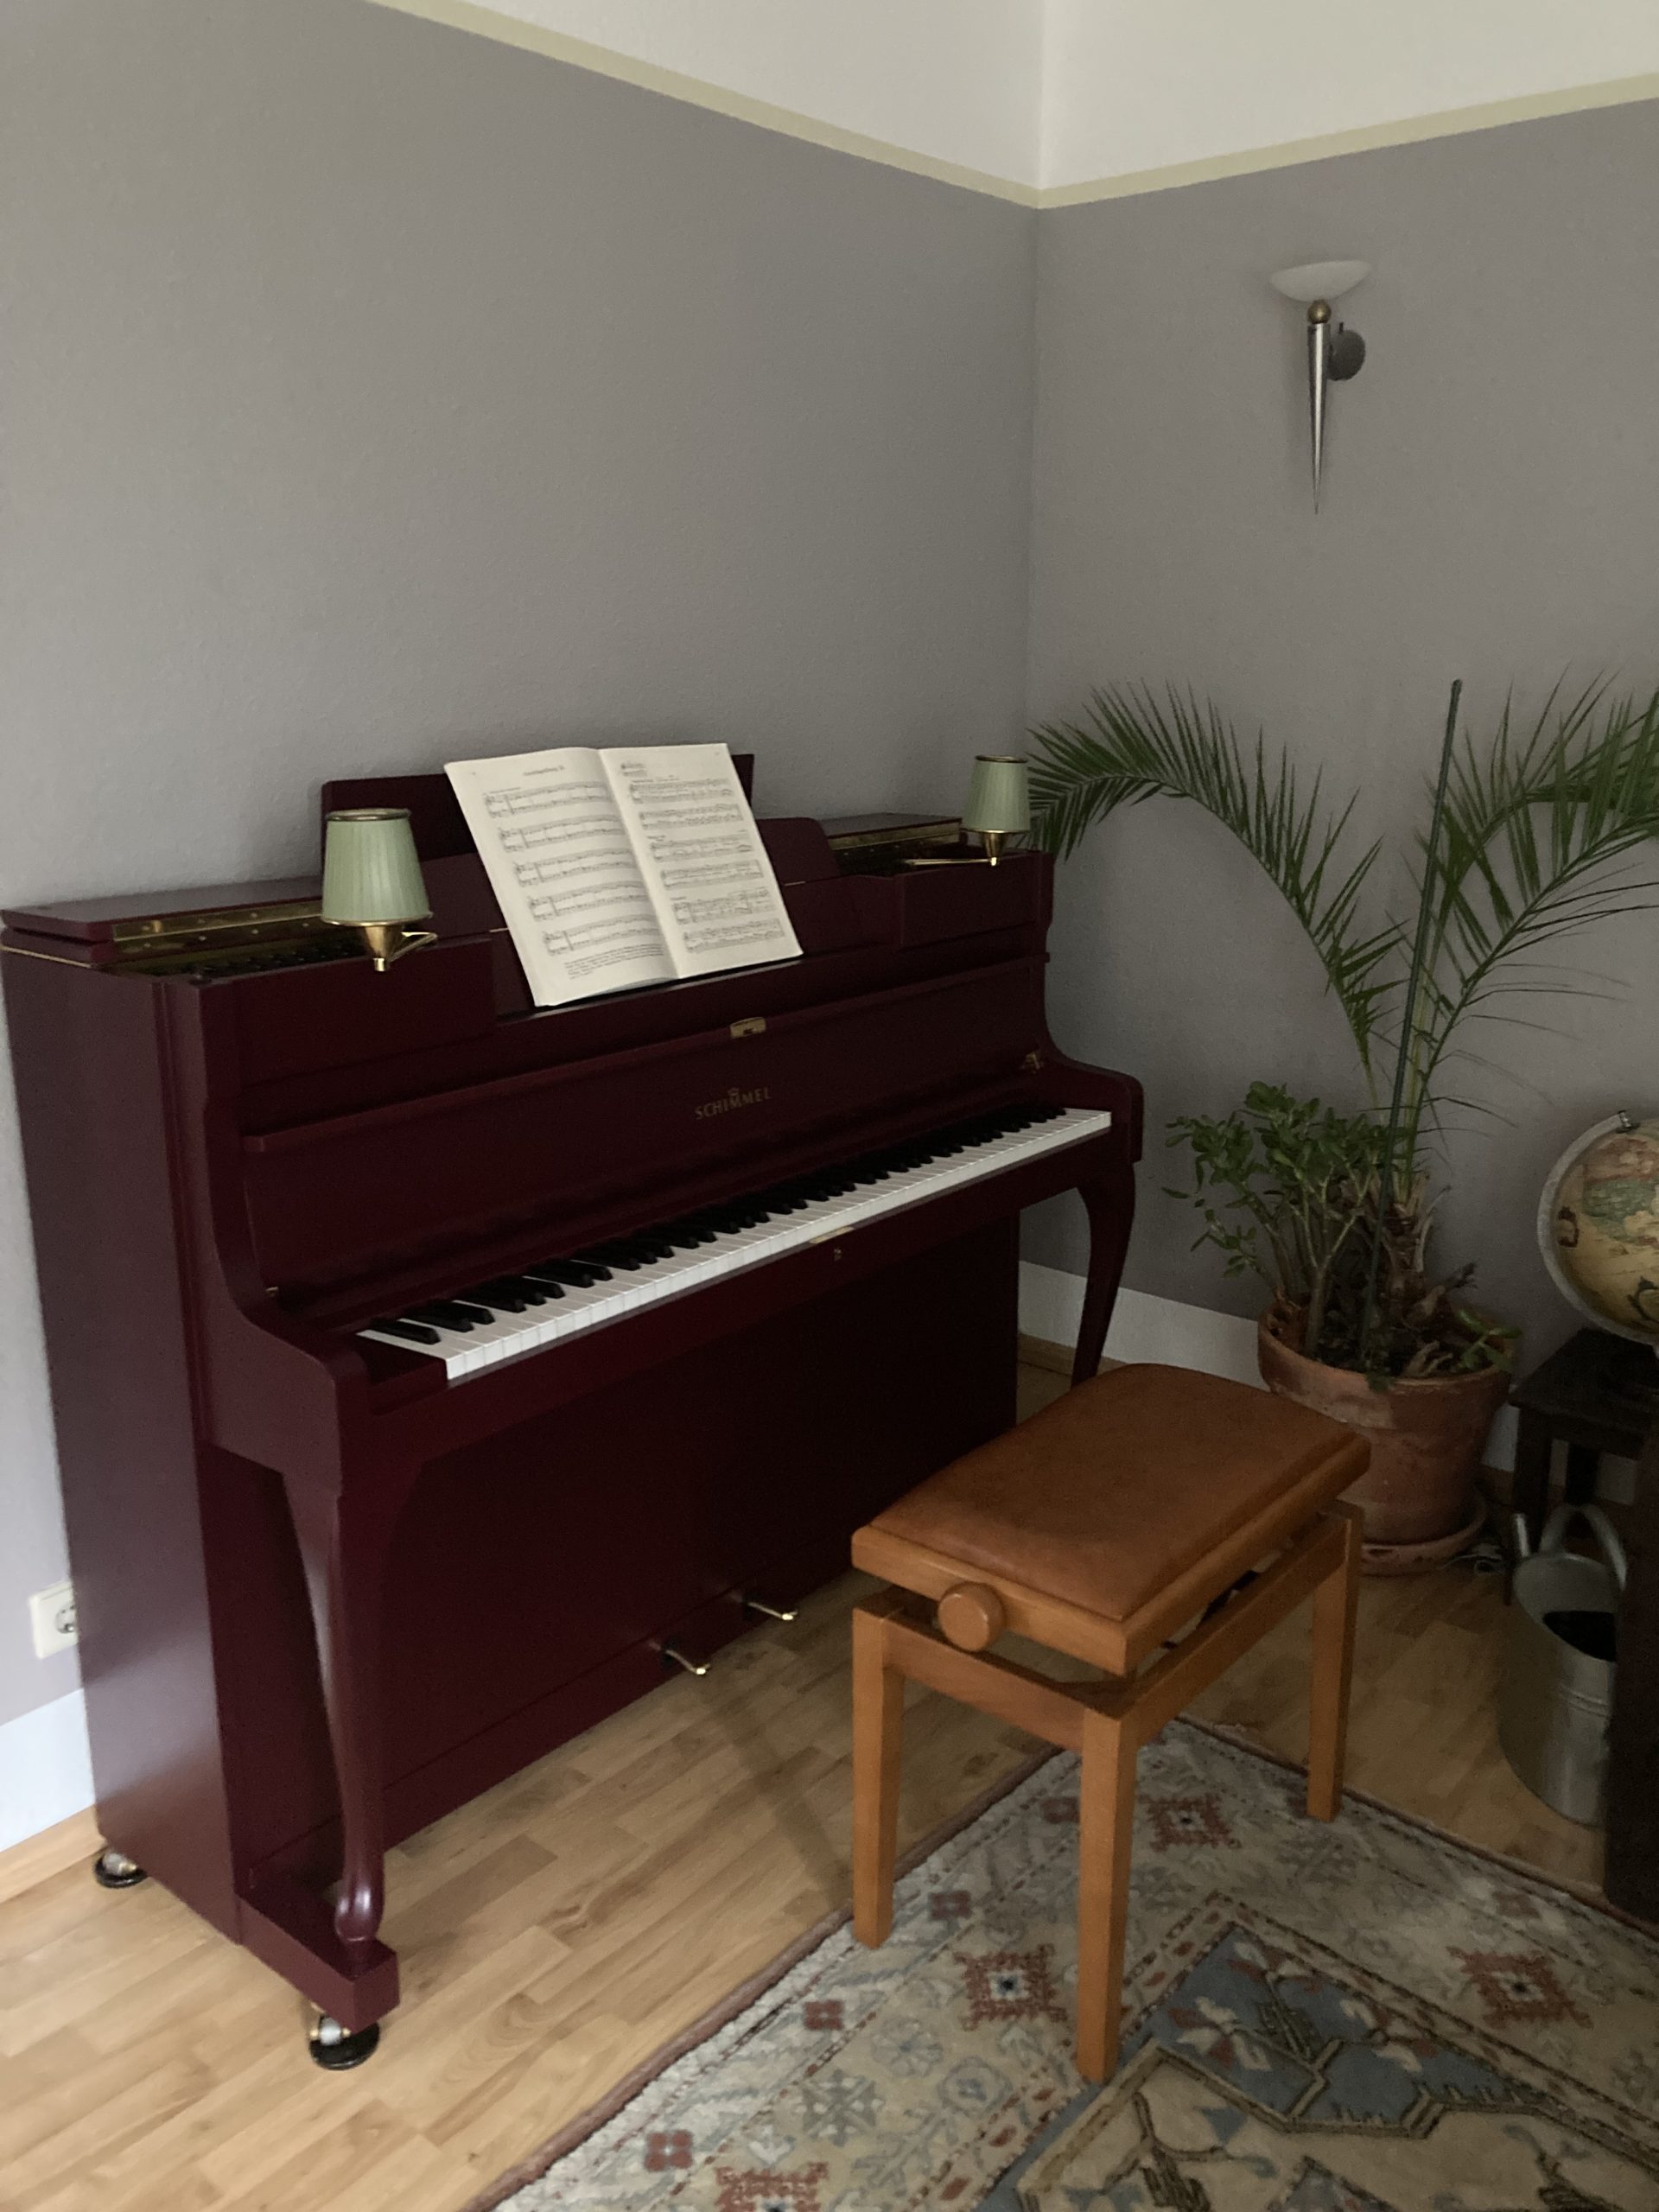 Klavier Schimmel 108 Chippendale - Klavierhaus Köpenick - Kunden Bewertung